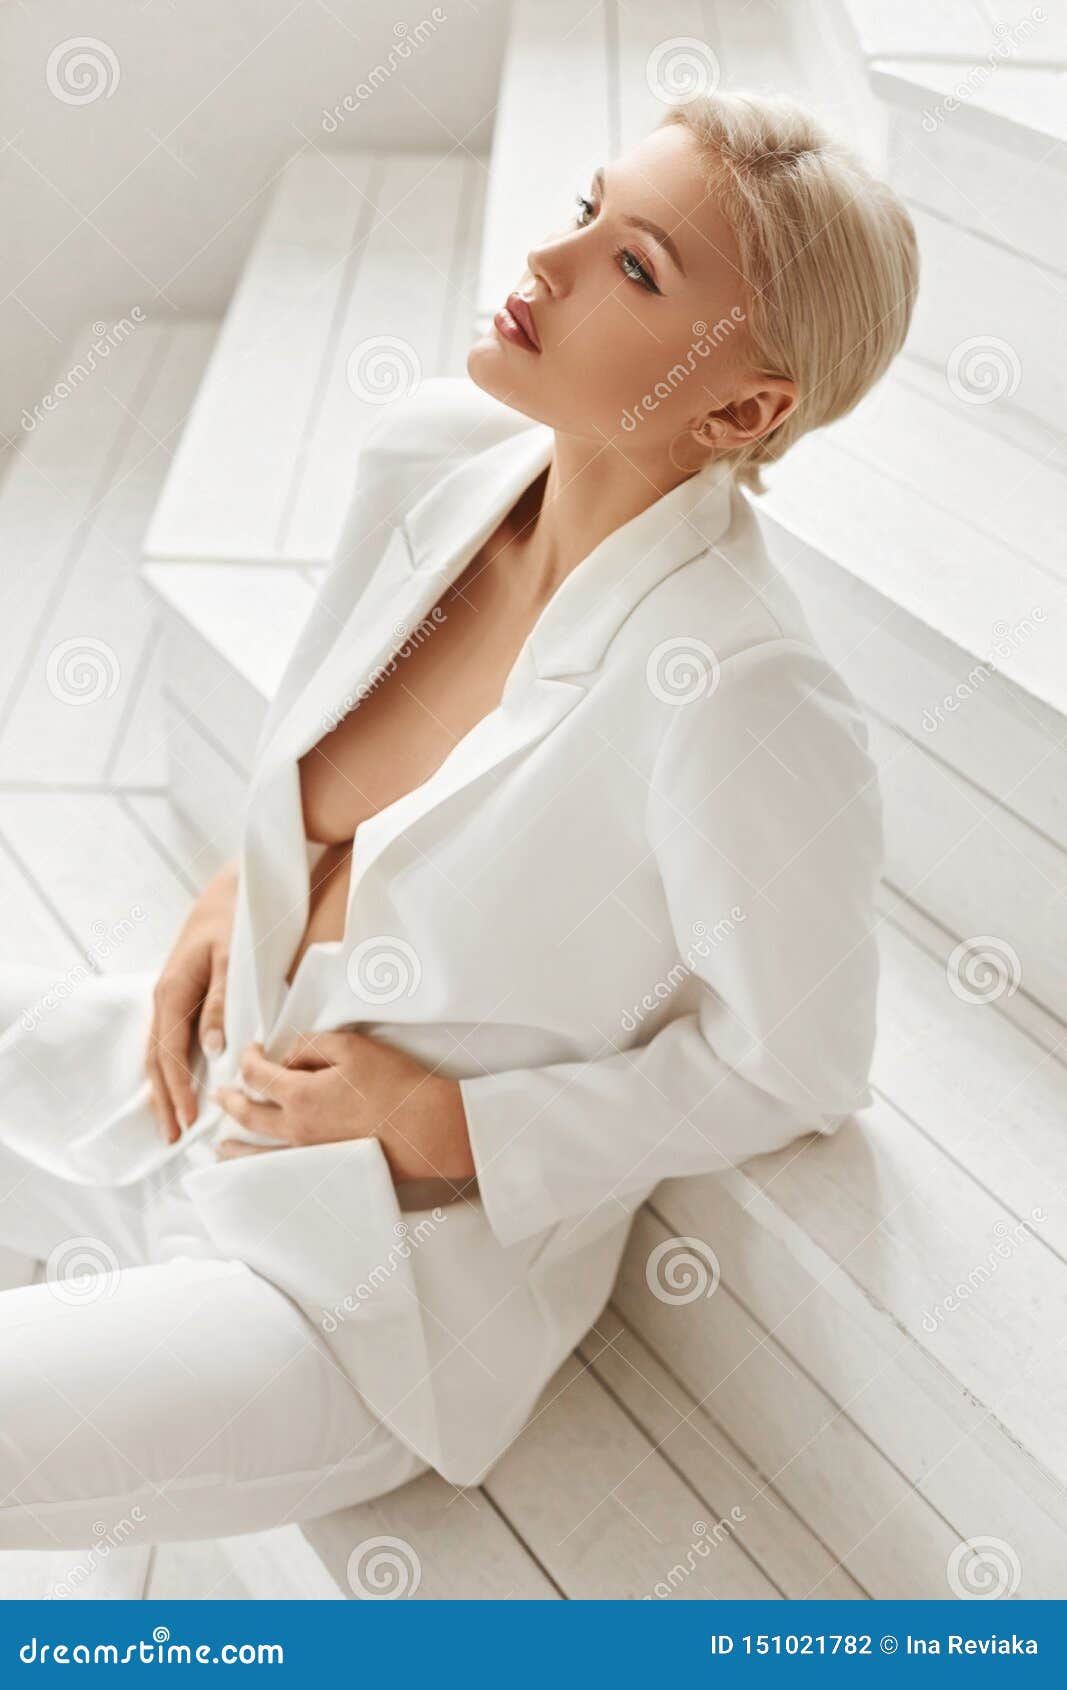 Seksowna busty młoda blondynka modela kobieta z doskonalić ciałem w garniturze na nagim ciele siedzi na bielu drewnianym. Seksowna busty młoda blondynka modela kobieta z doskonalić ciałem w garniturze na nagim ciele siedzi na białych drewnianych schodkach Gorąca dziewczyny sekretarka kusi i seksowny pozować w wnętrzu